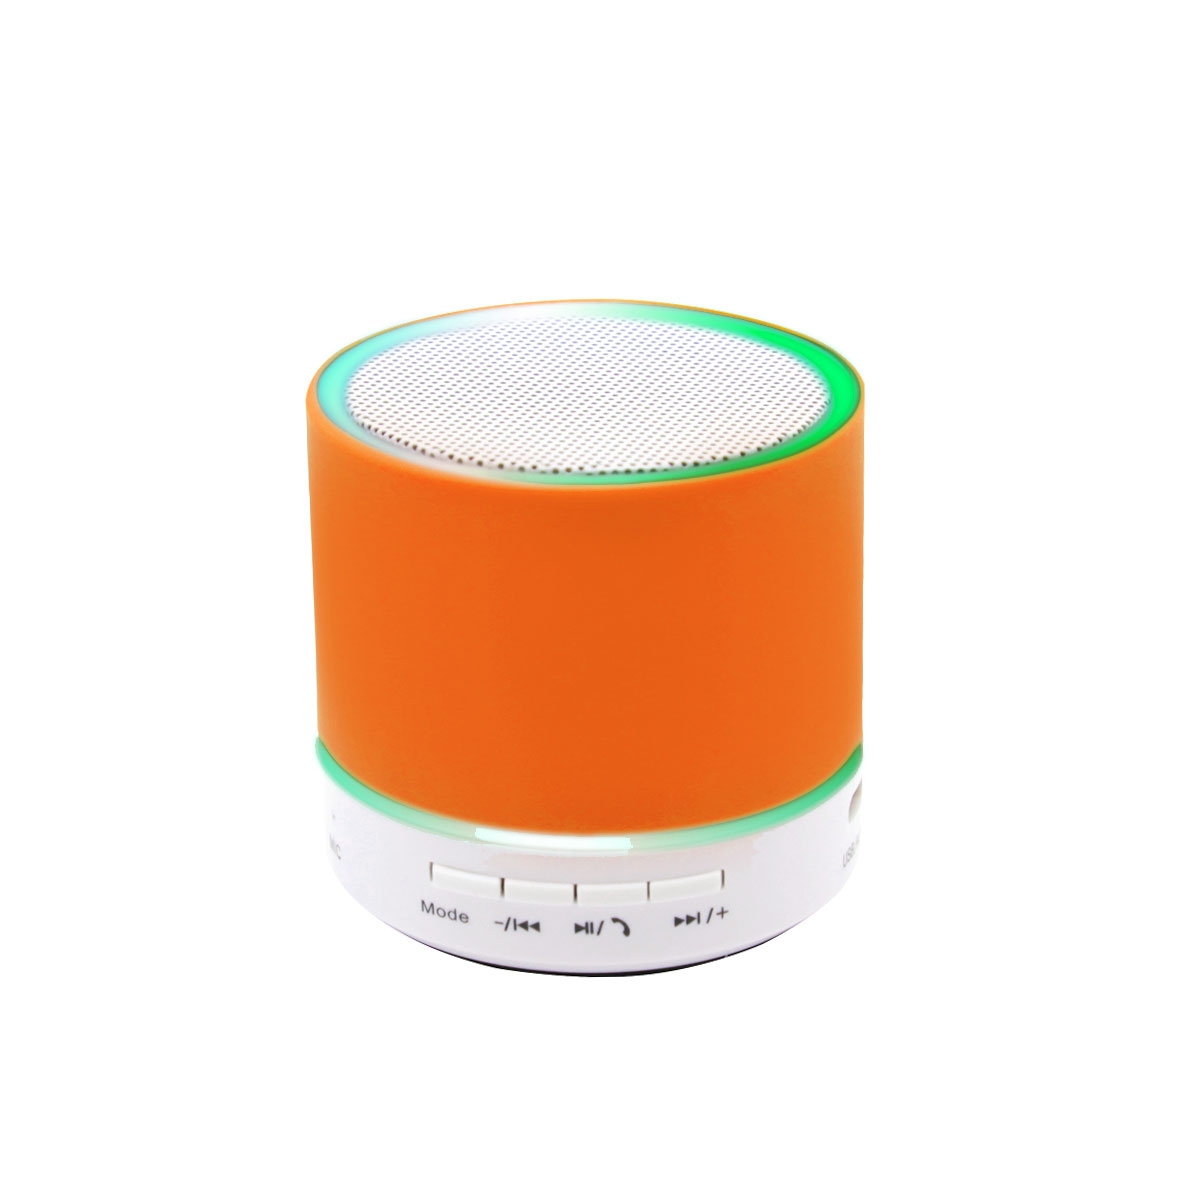 Беспроводная Bluetooth колонка Attilan (BLTS01), оранжевая, оранжевый